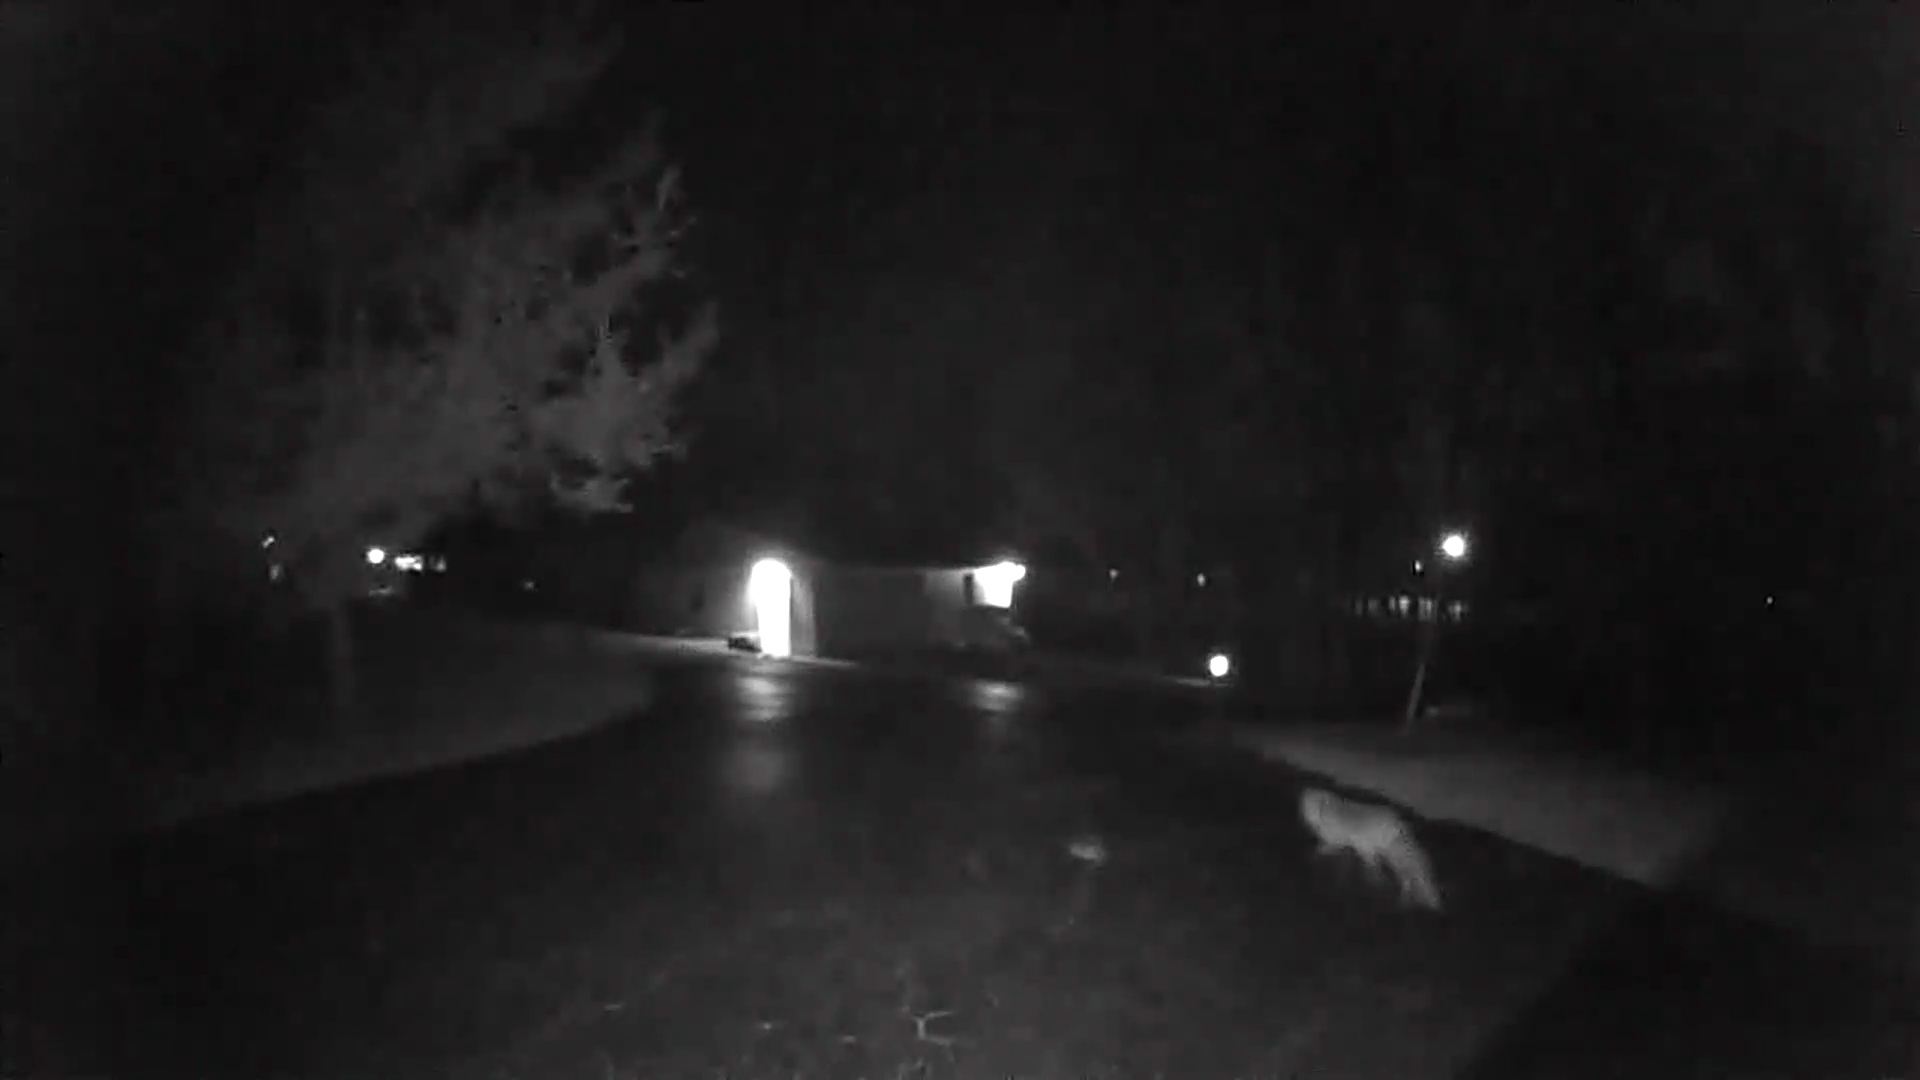 Blink Video Doorbell night vision